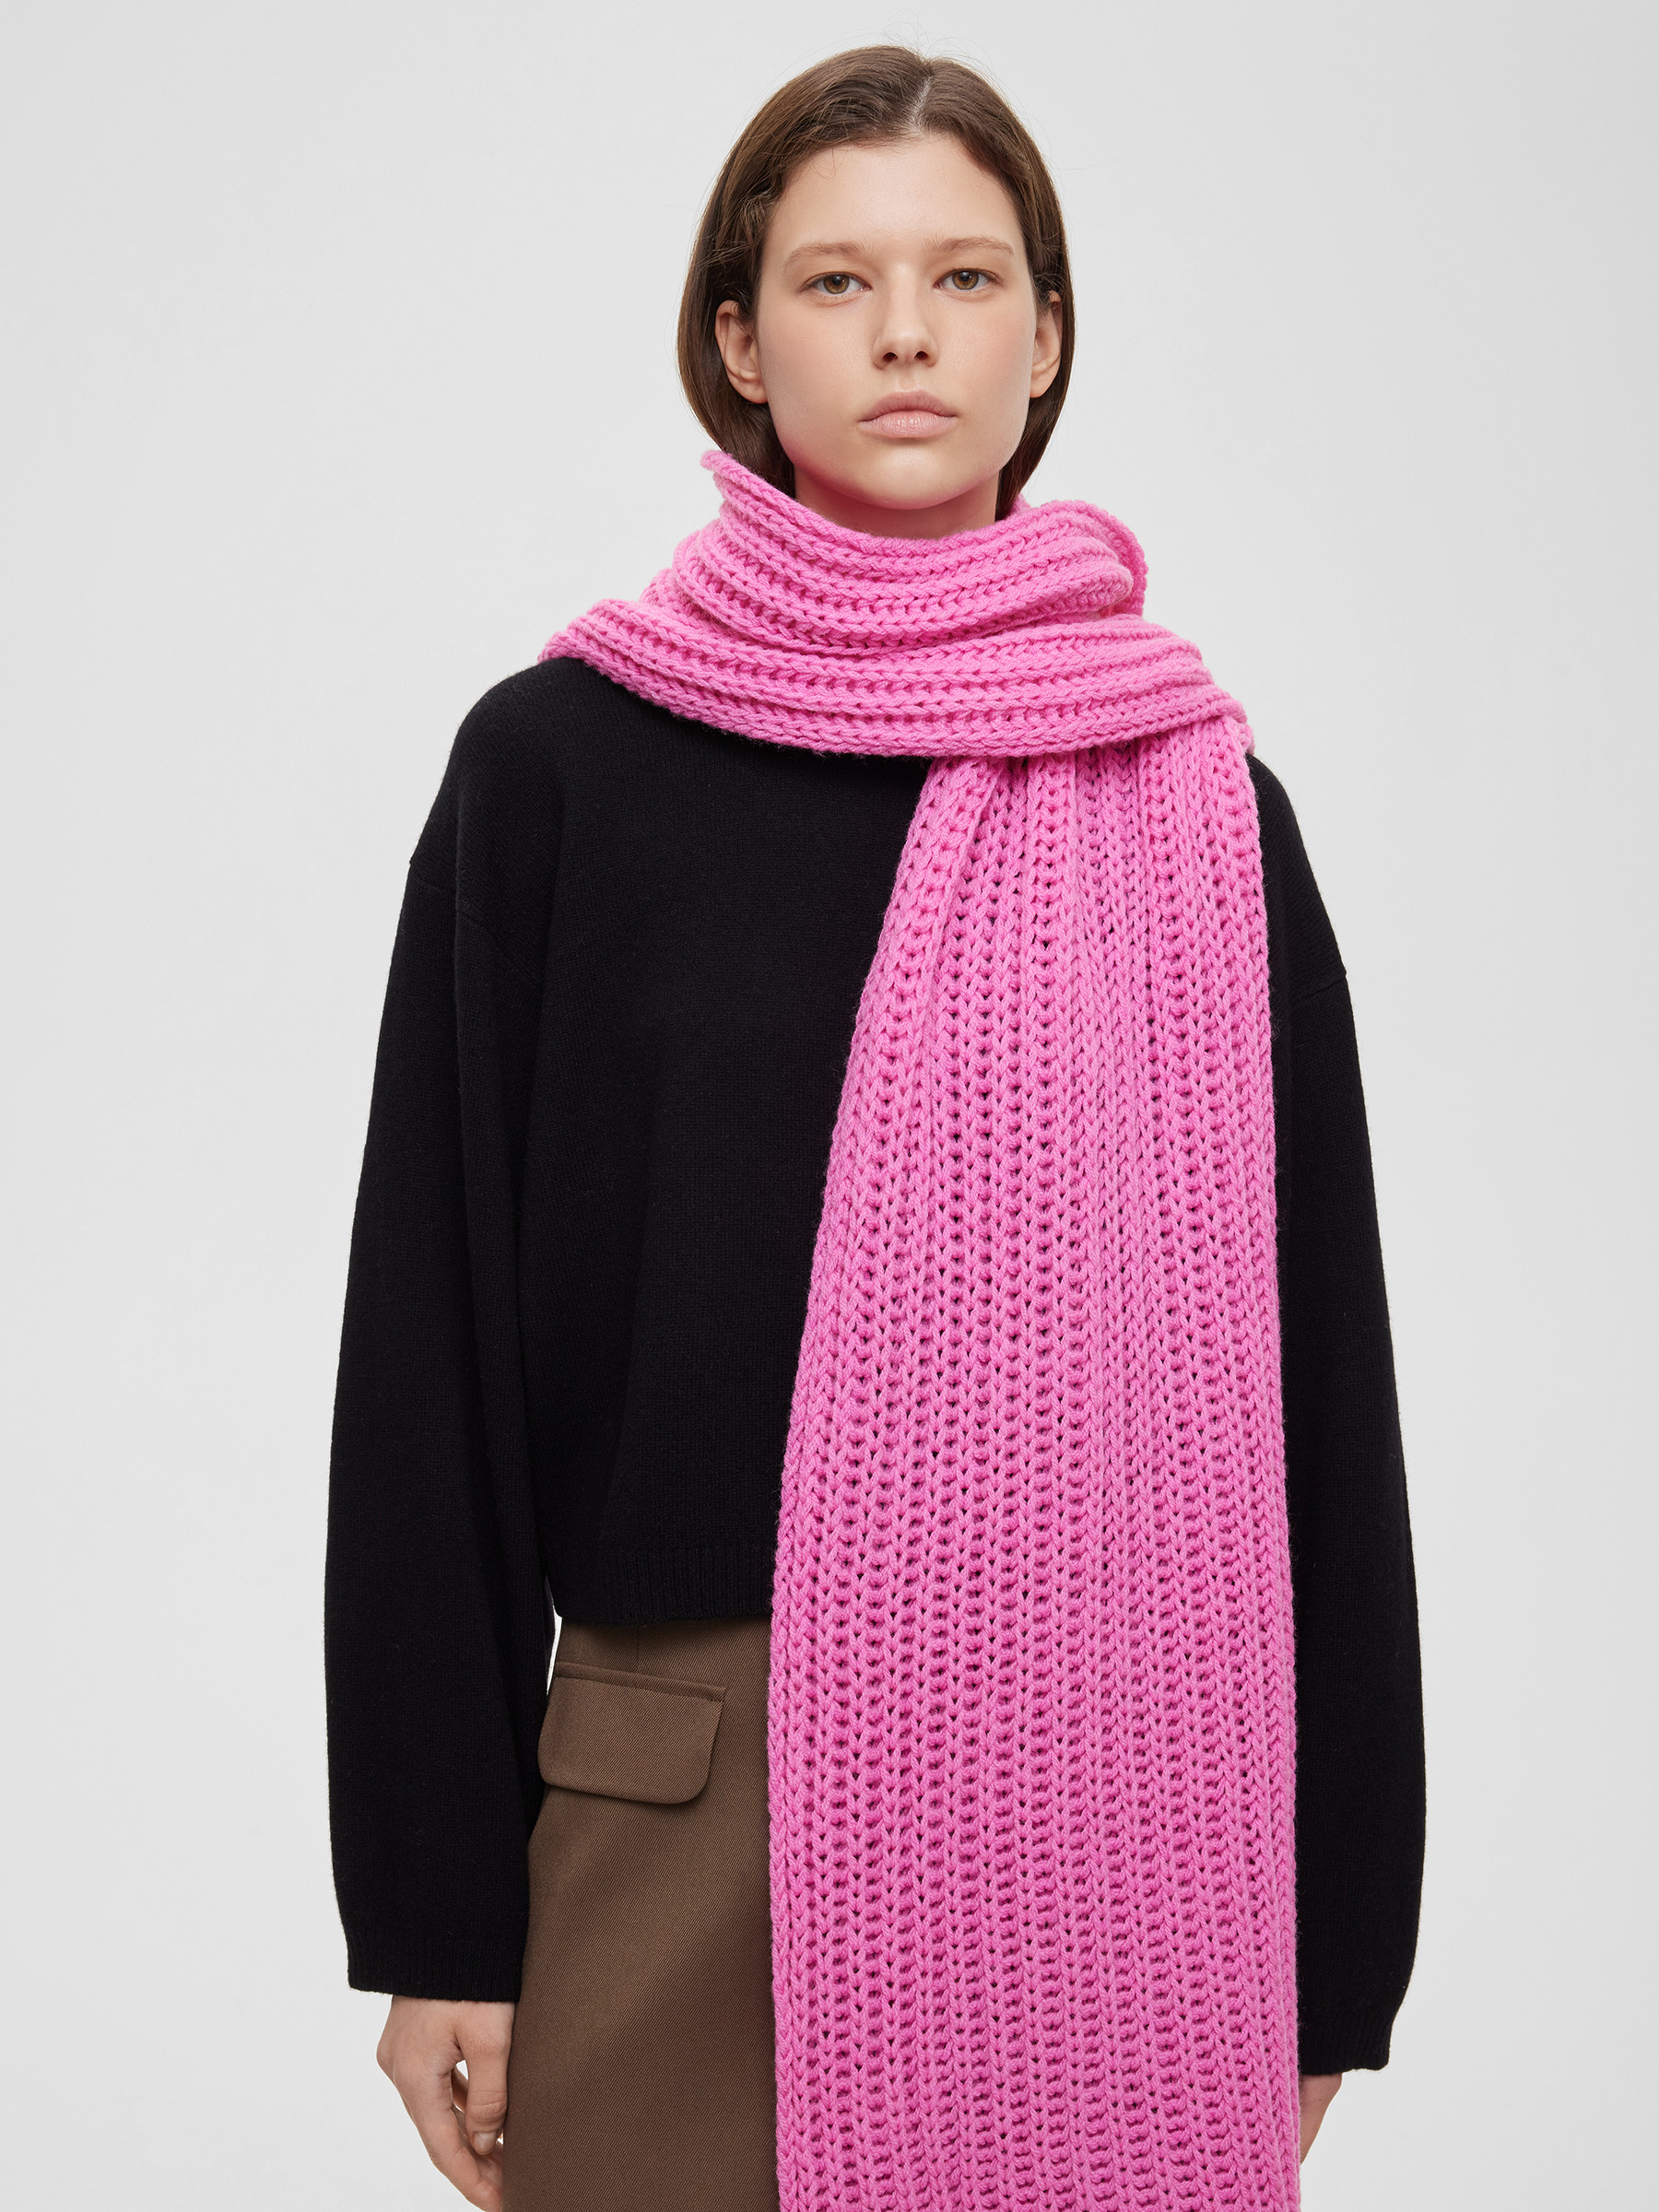 Шарф легкий крупной вязки, цвет – розовая фуксия шарф крупной вязки цвет – молочный